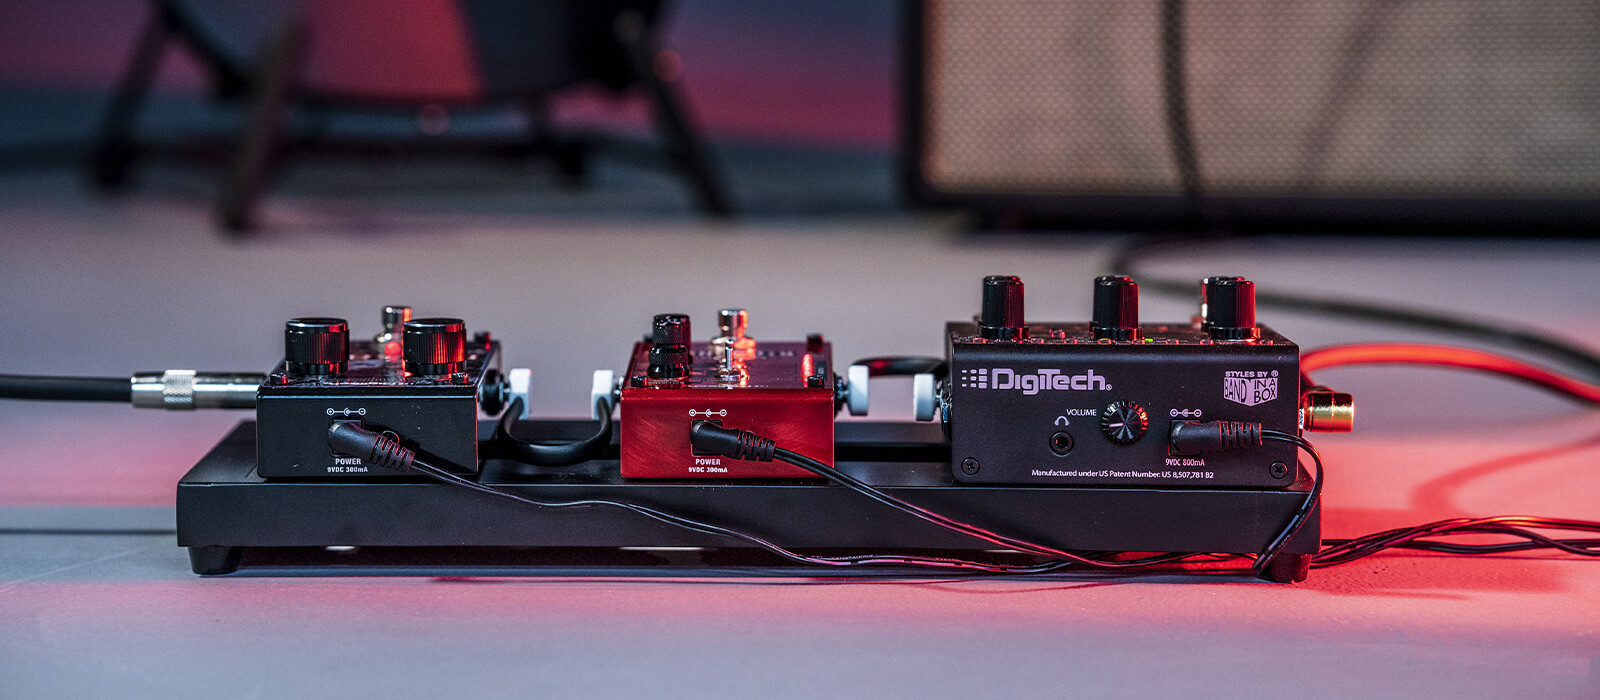 DigiTech pedals in pedalboard